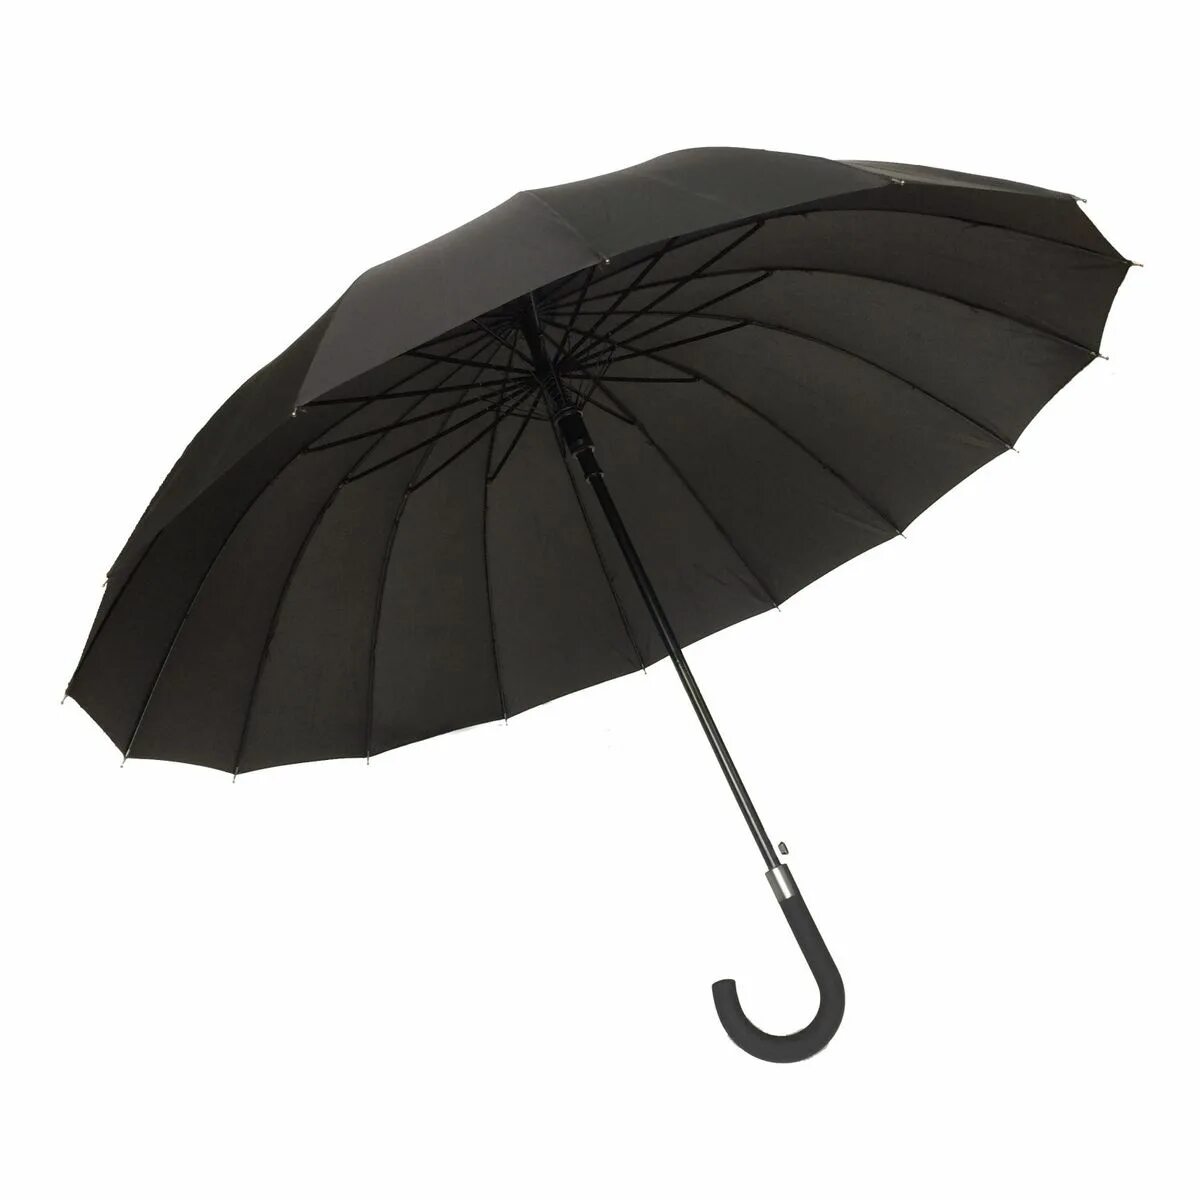 Длинный зонт. Зонт на 2 человека. Зонт 16. Зонт Зебра крупная. Длинный зонтик